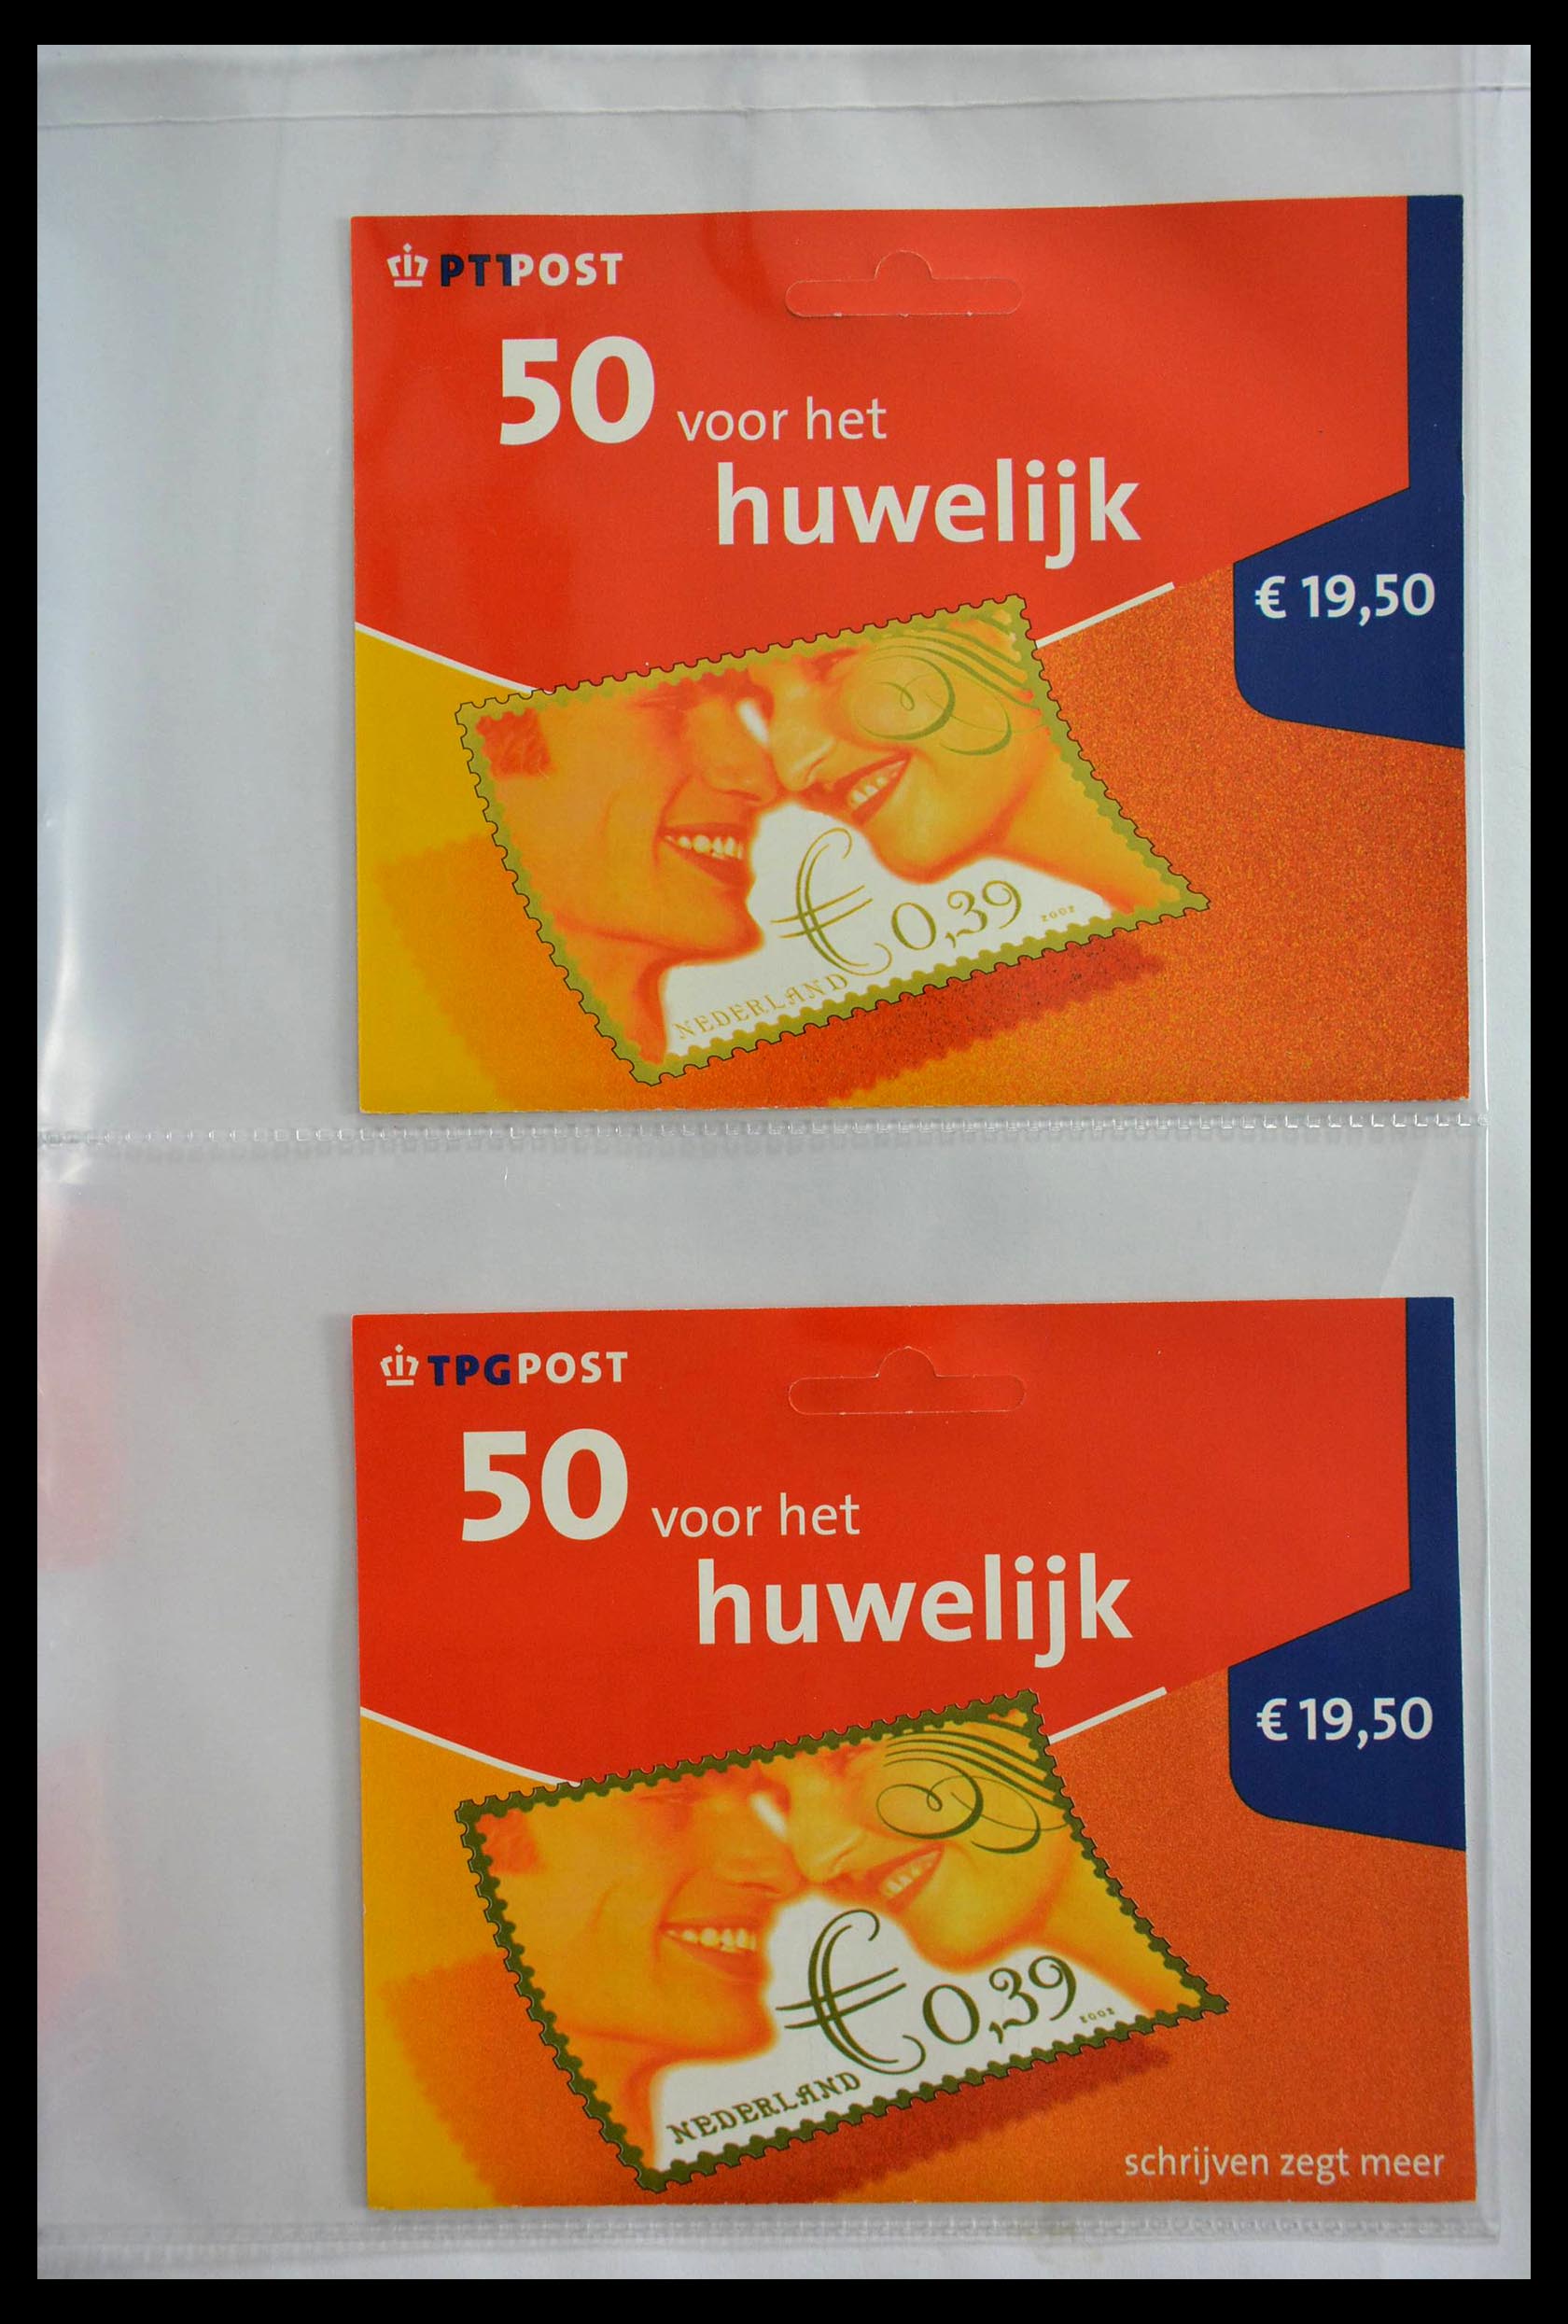 28888 200 - 28888 Nederland hangmapjes 1997-2008.